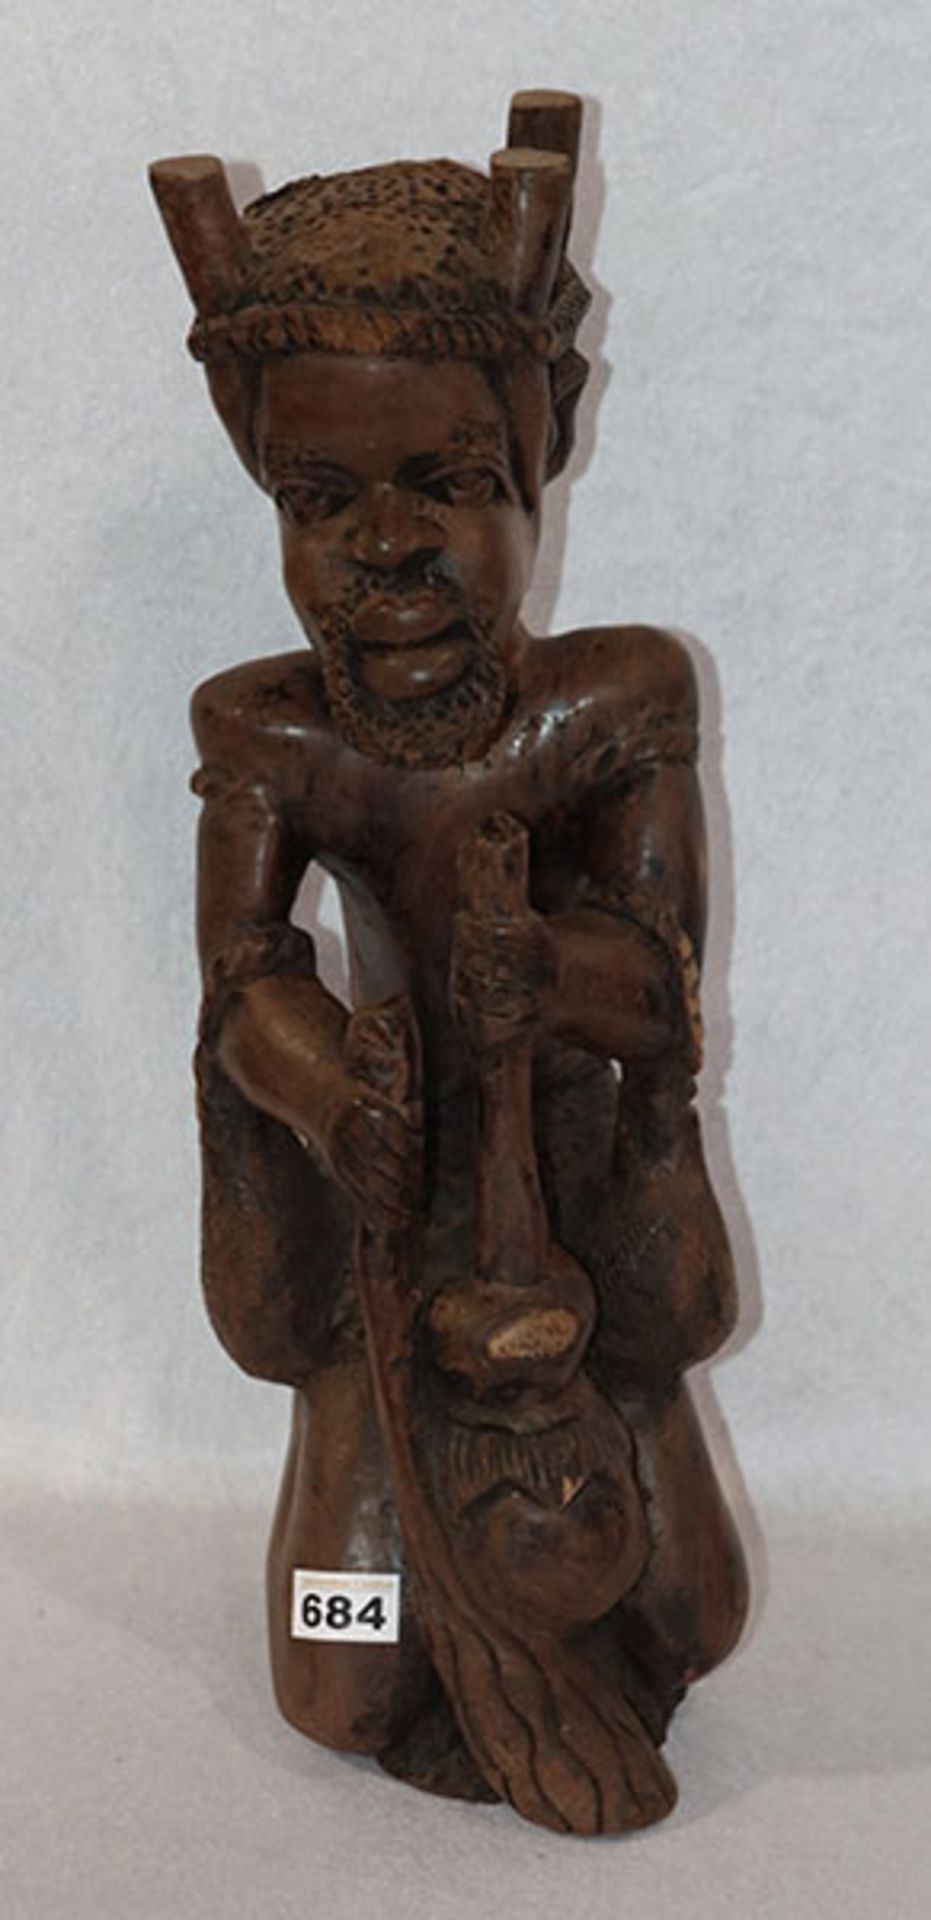 Afrikanische Holzskulptur, teils bestossen, H 52 cm, Altersspuren